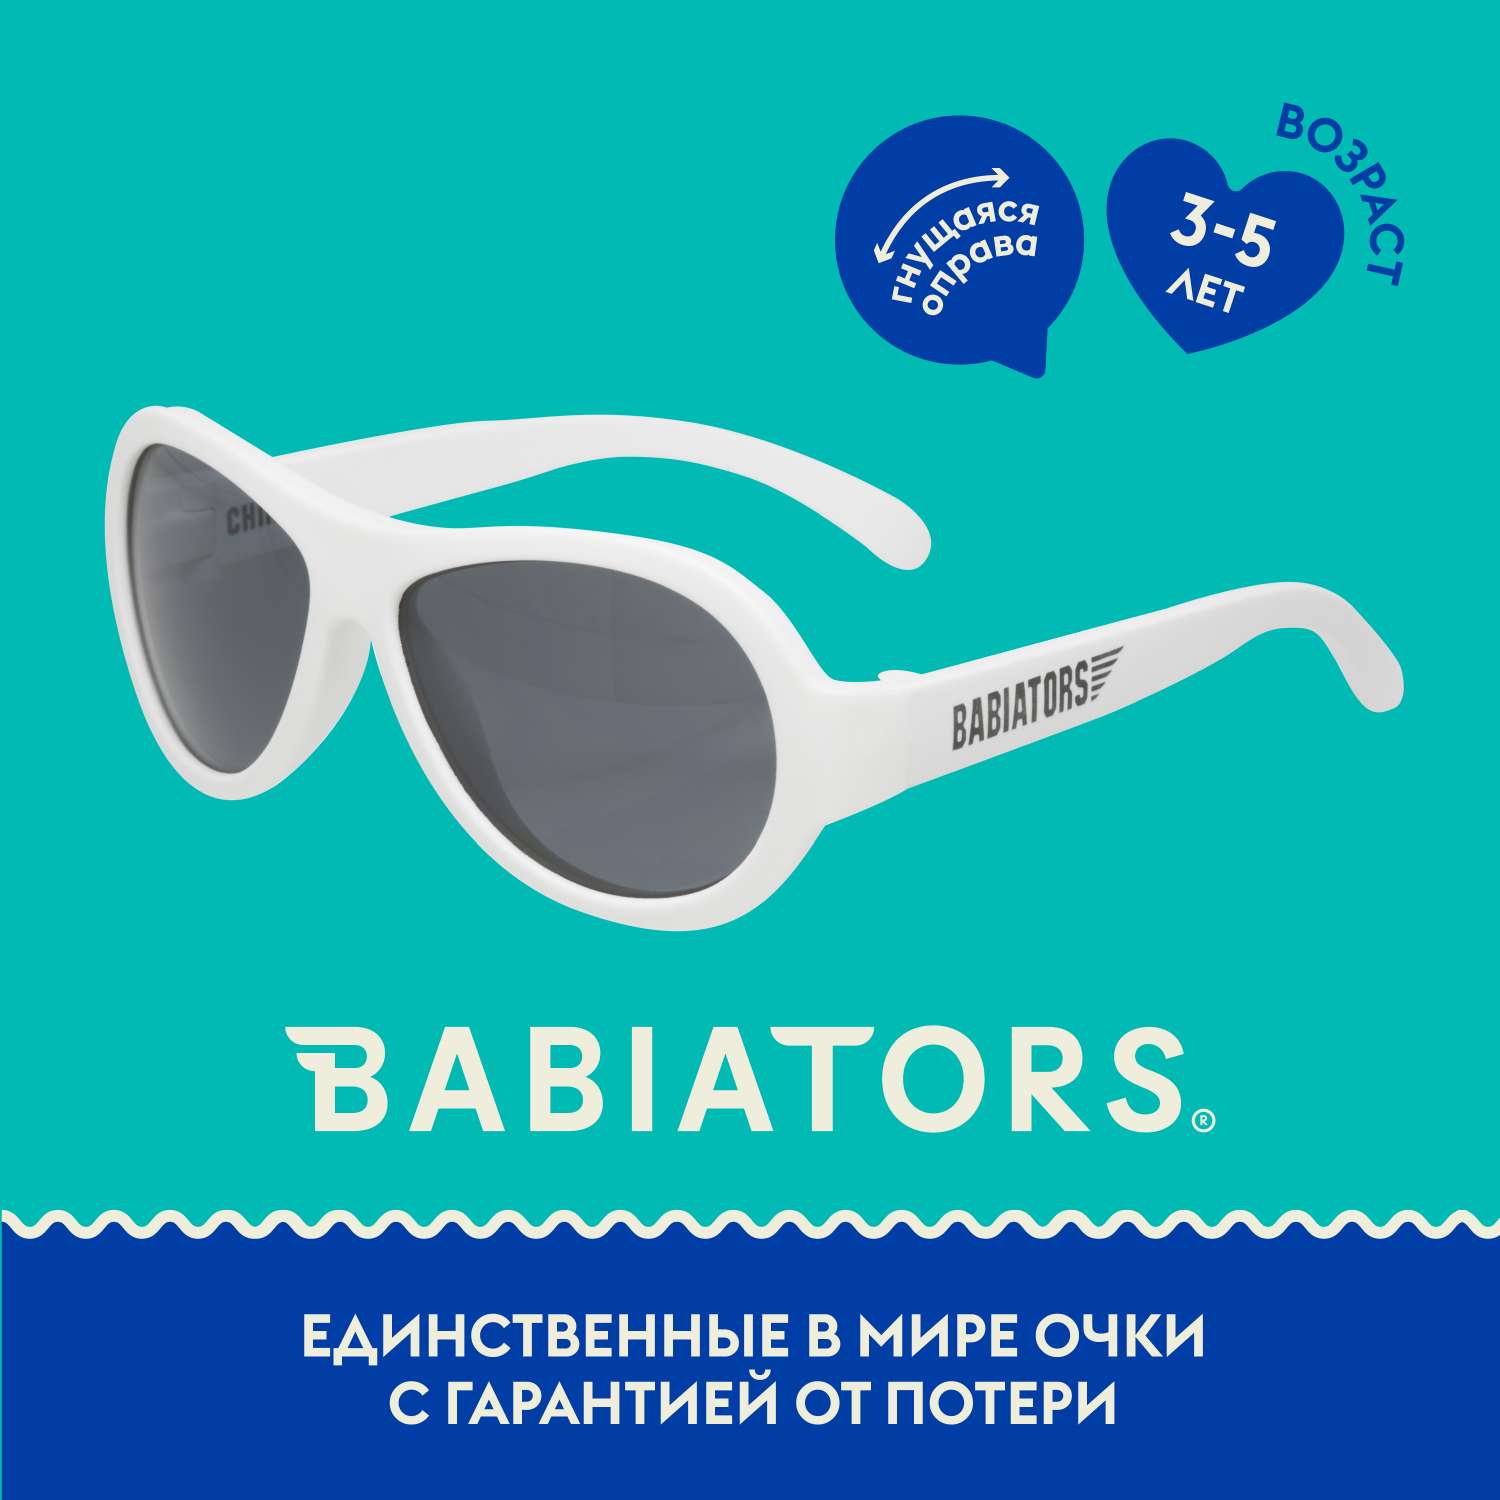 Солнцезащитные очки Babiators Aviator Шаловливый белый 3-5 BAB-015 - фото 1